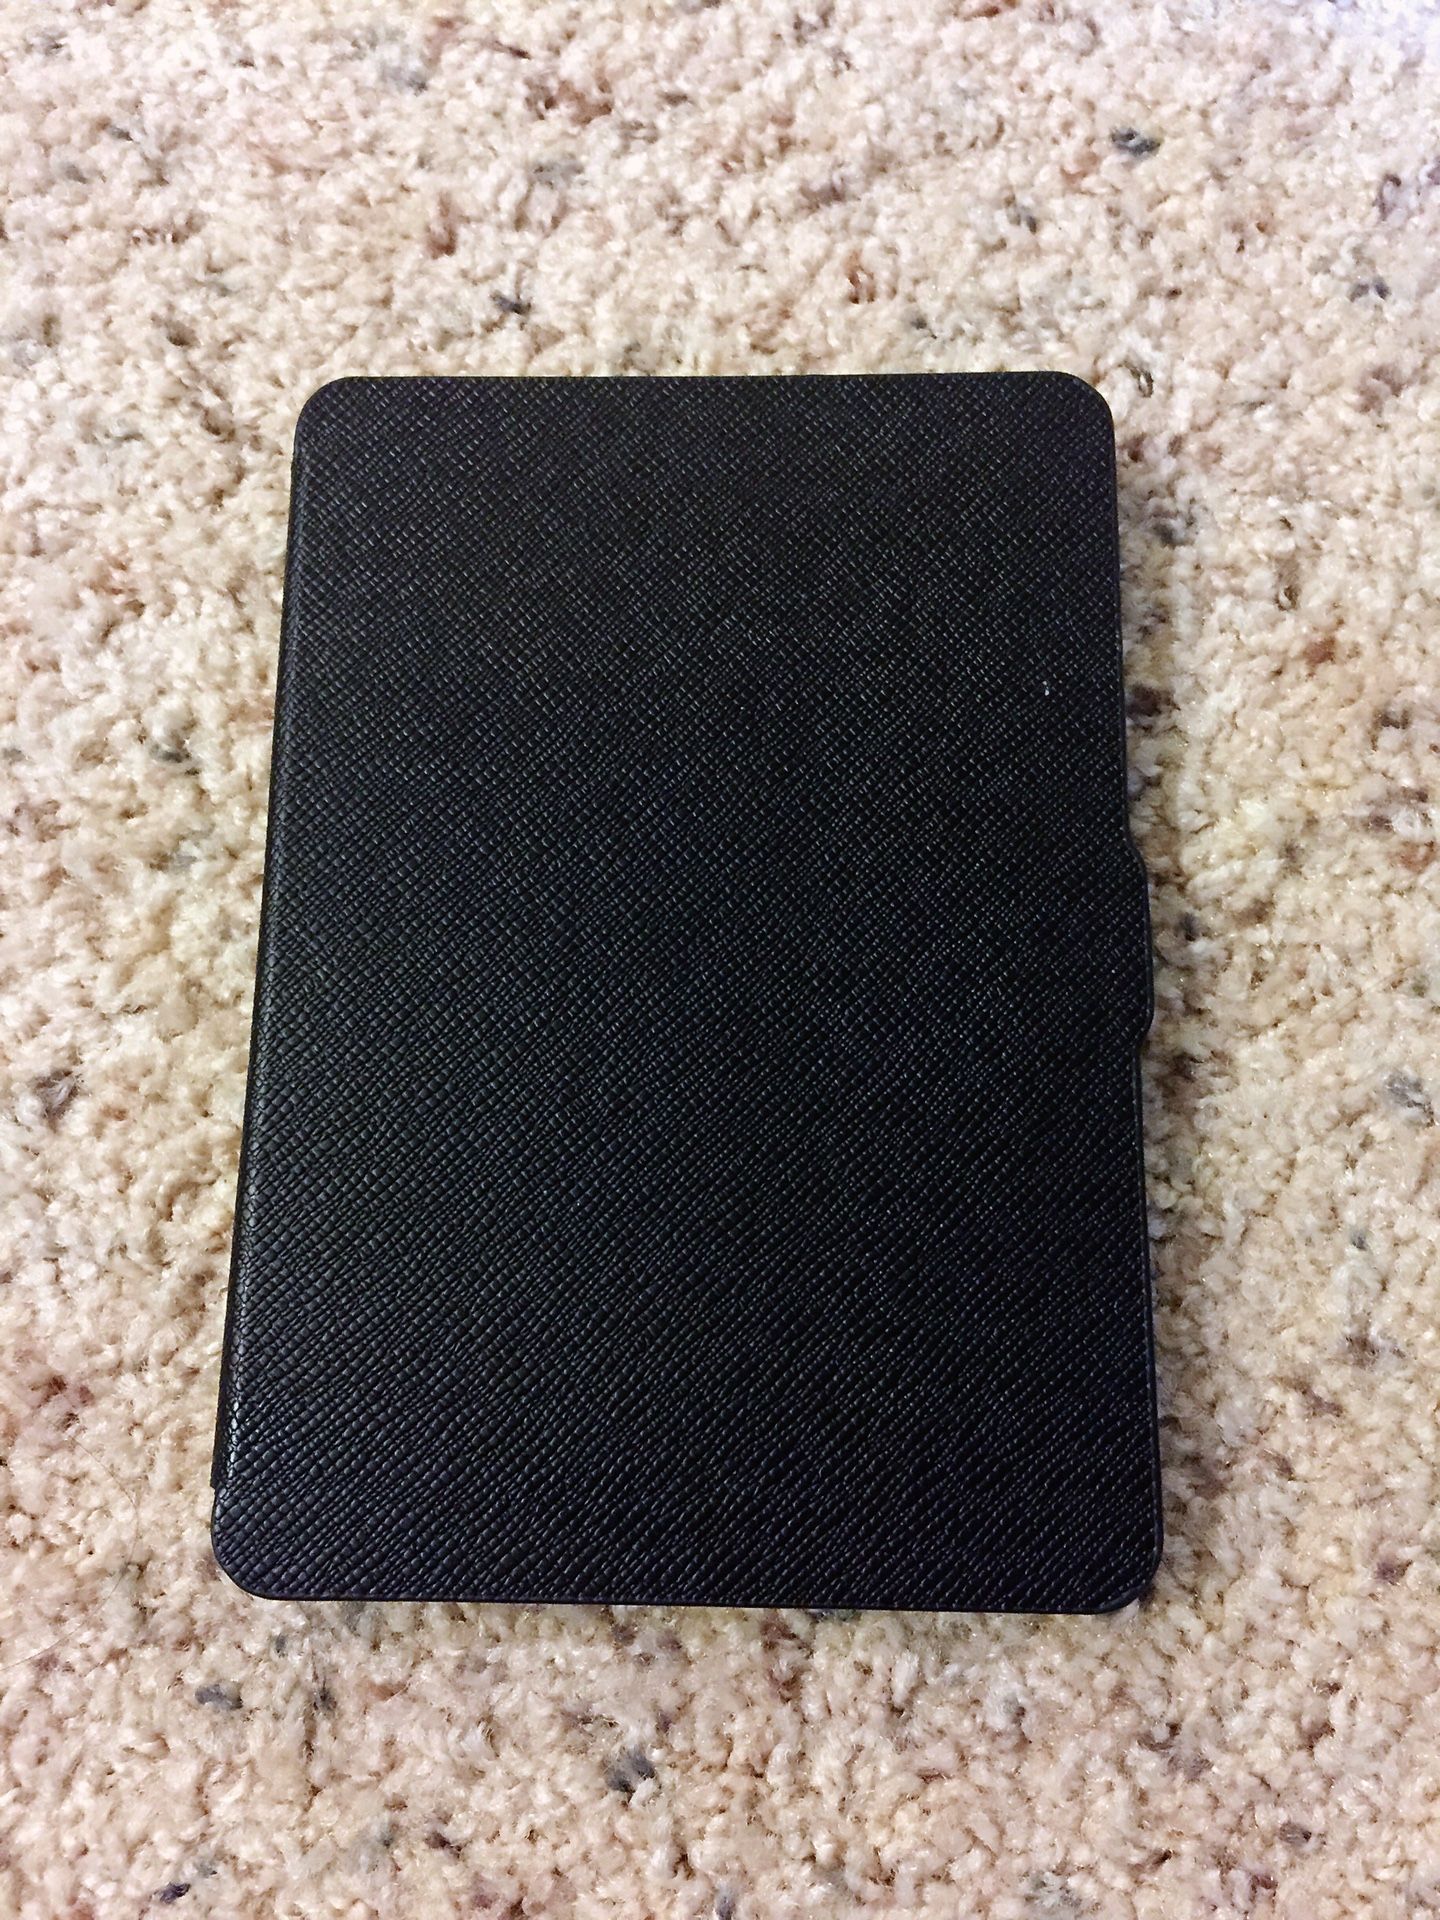 Kindle Paperwhite case - 6” Kindle case